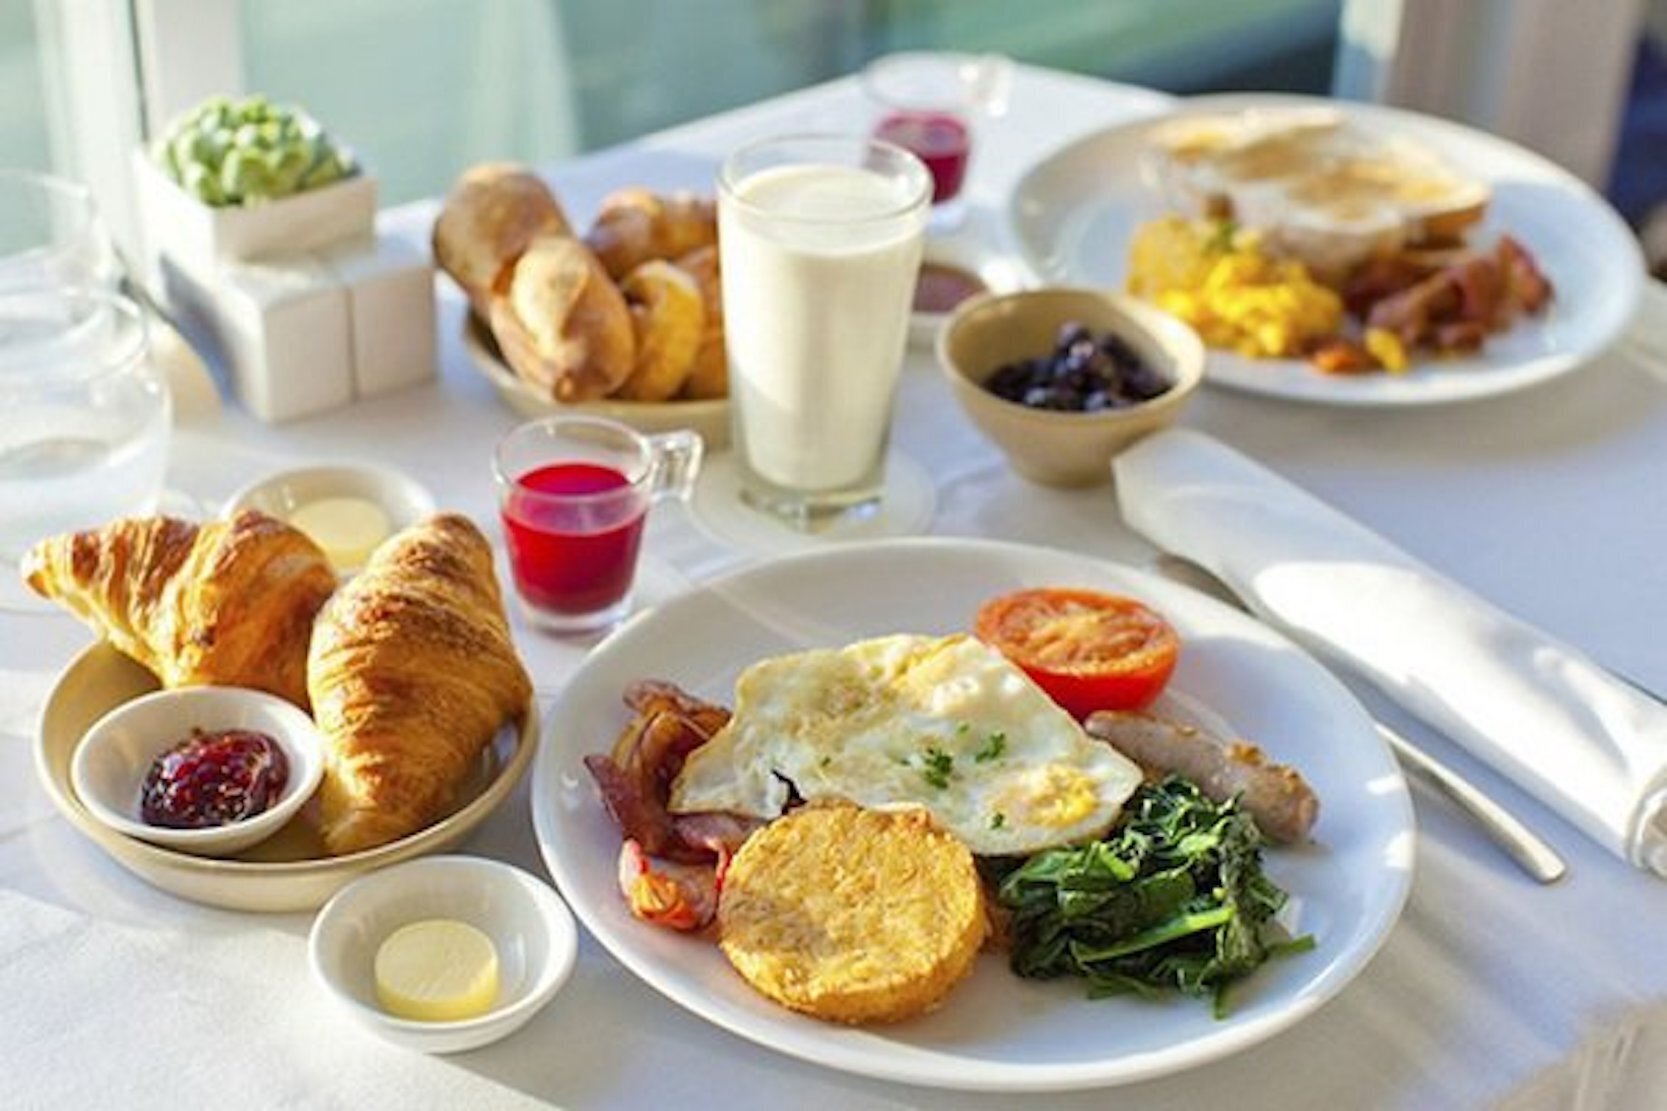 Nếu bạn bỏ ăn sáng mỗi ngày sẽ ảnh hưởng đến sức khoẻ. (Ảnh minh hoạ)